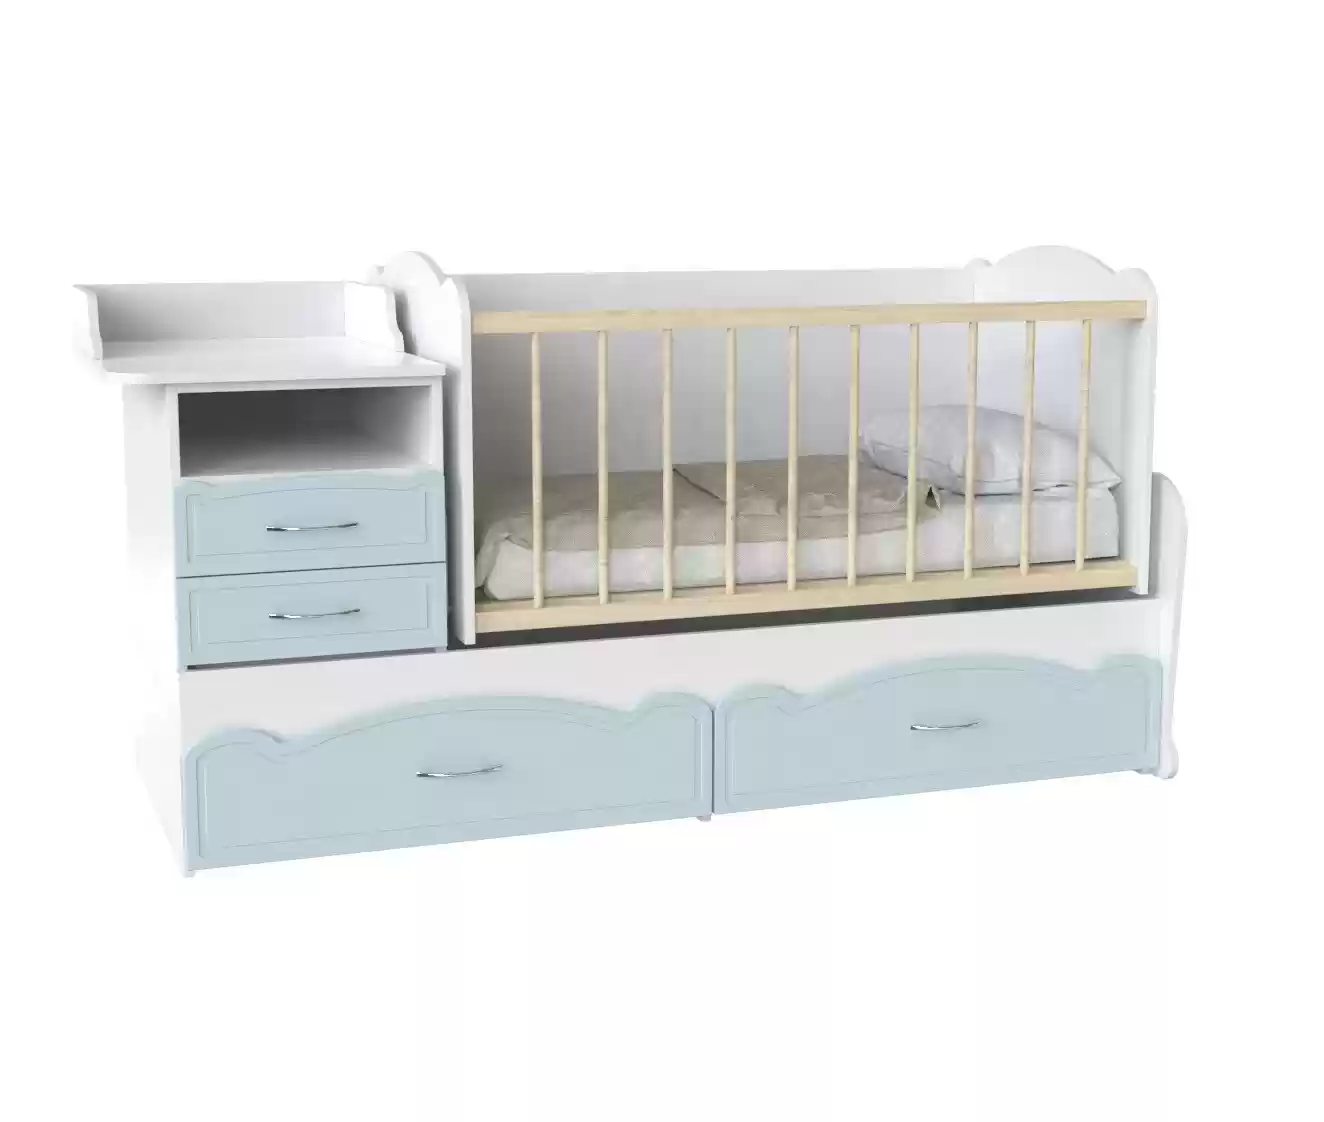 Дитяче ліжко Binky DS043 (3 в 1) аляска/блакитна лагуна (МДФ)